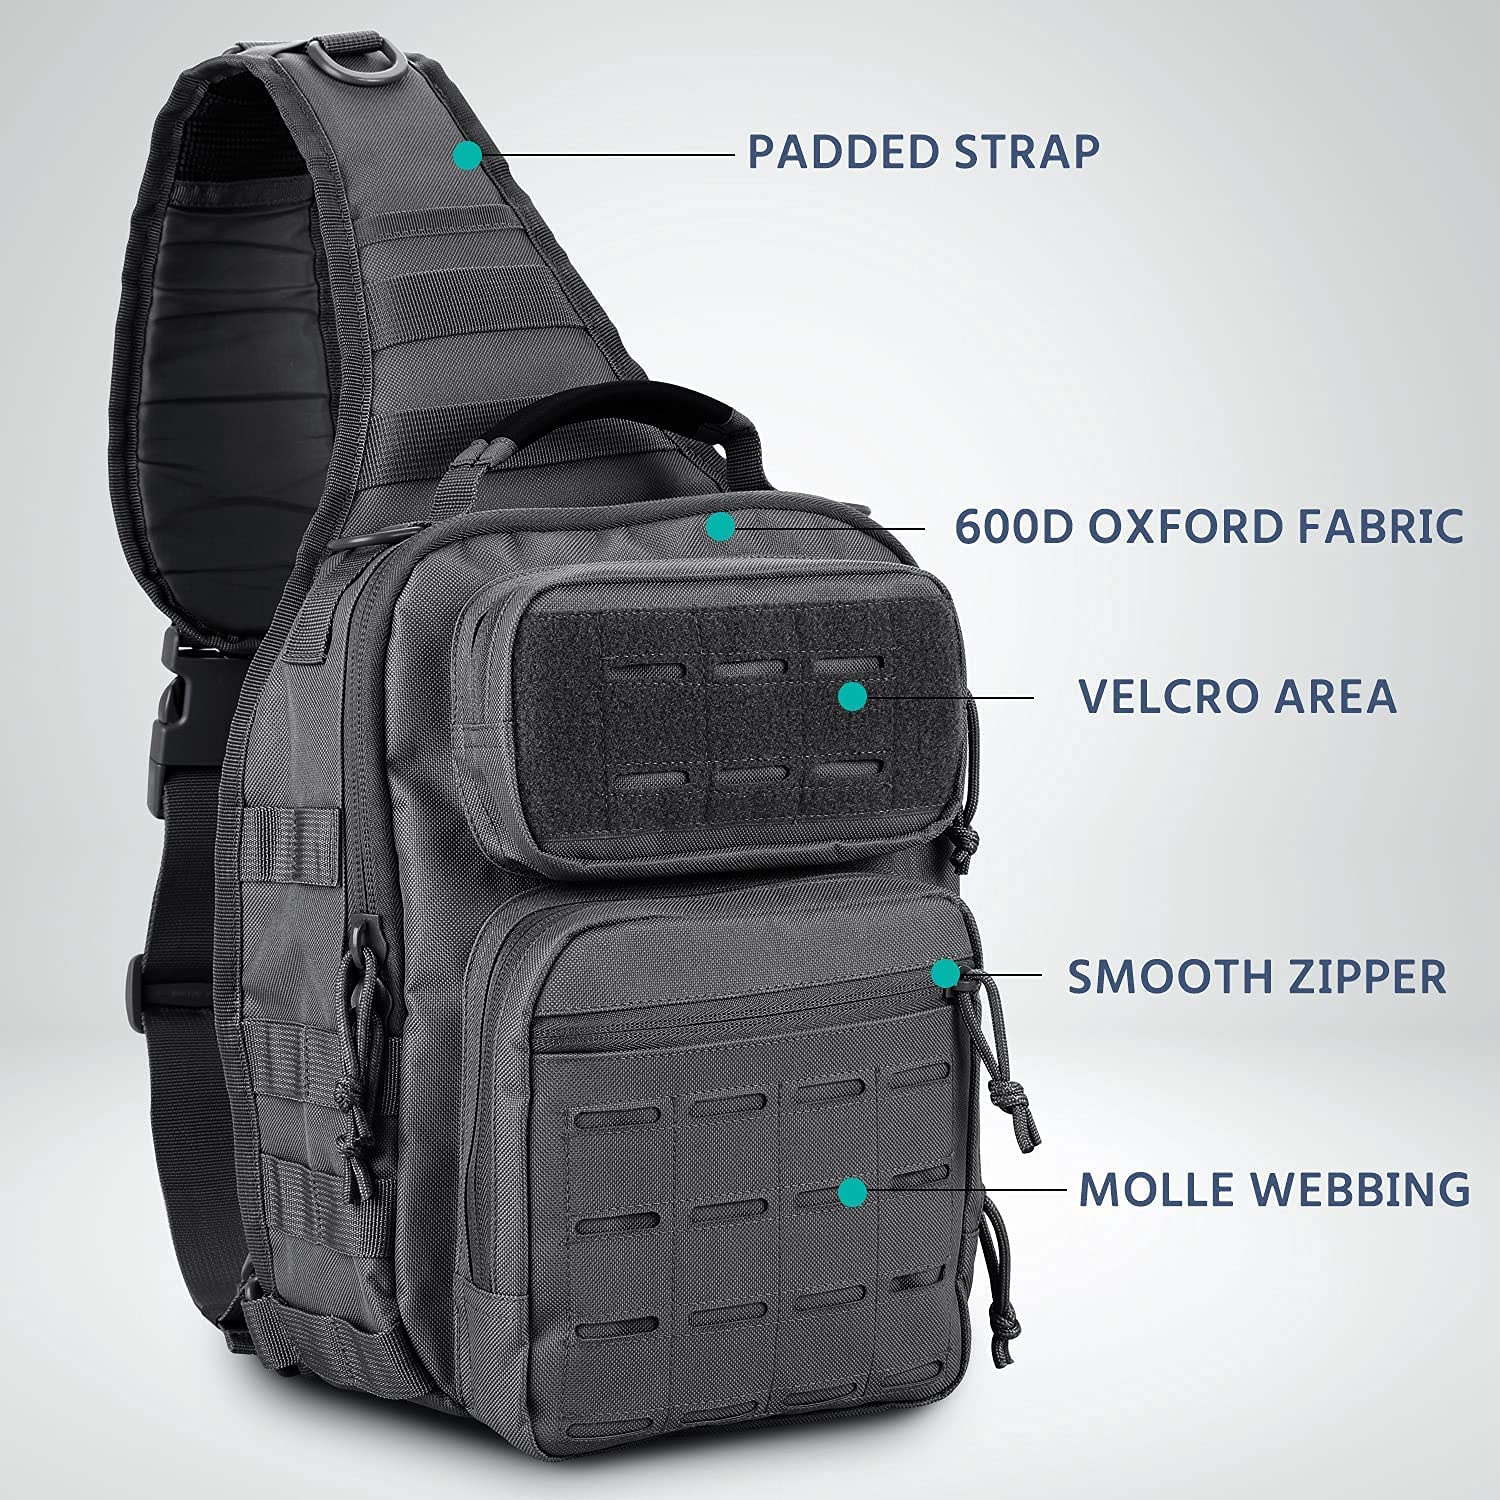 WINCENT Tactical Sling Bag Pack Military Rover Shoulder Sling Backpack Molle Assault Range Bag EDC Diaper Bag Day Pack Black